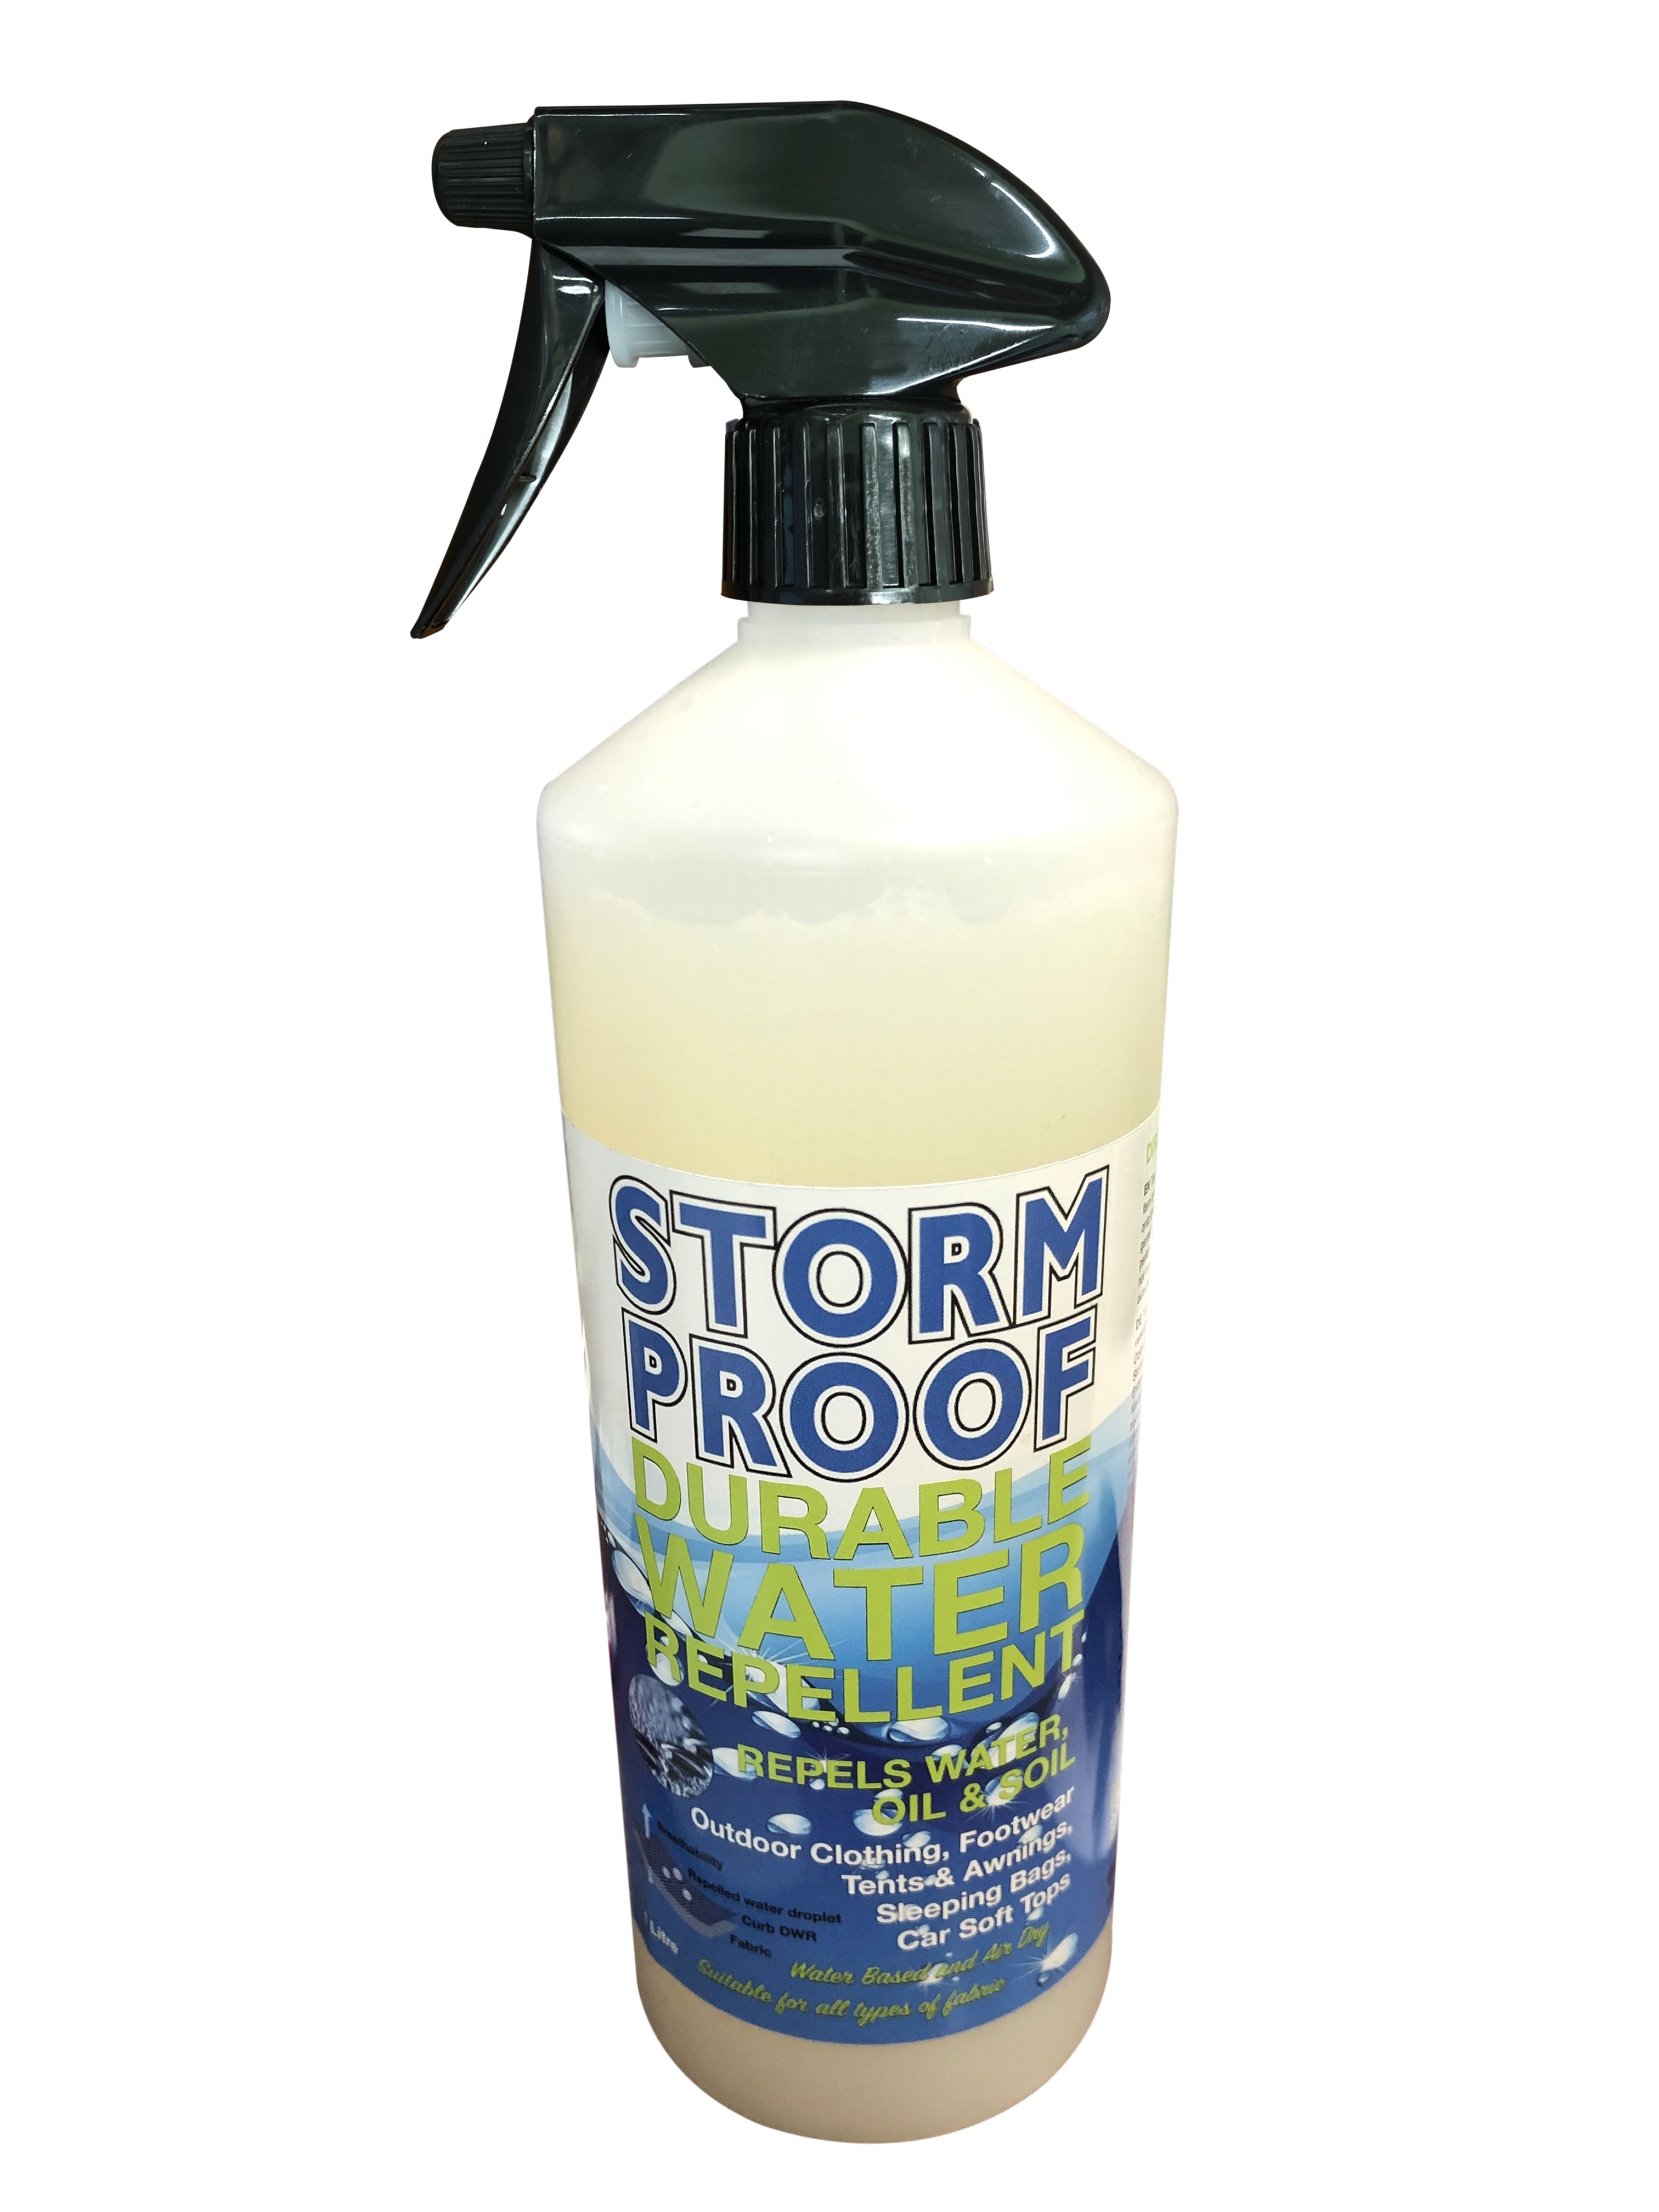 Stormproof Durable Water Repellent